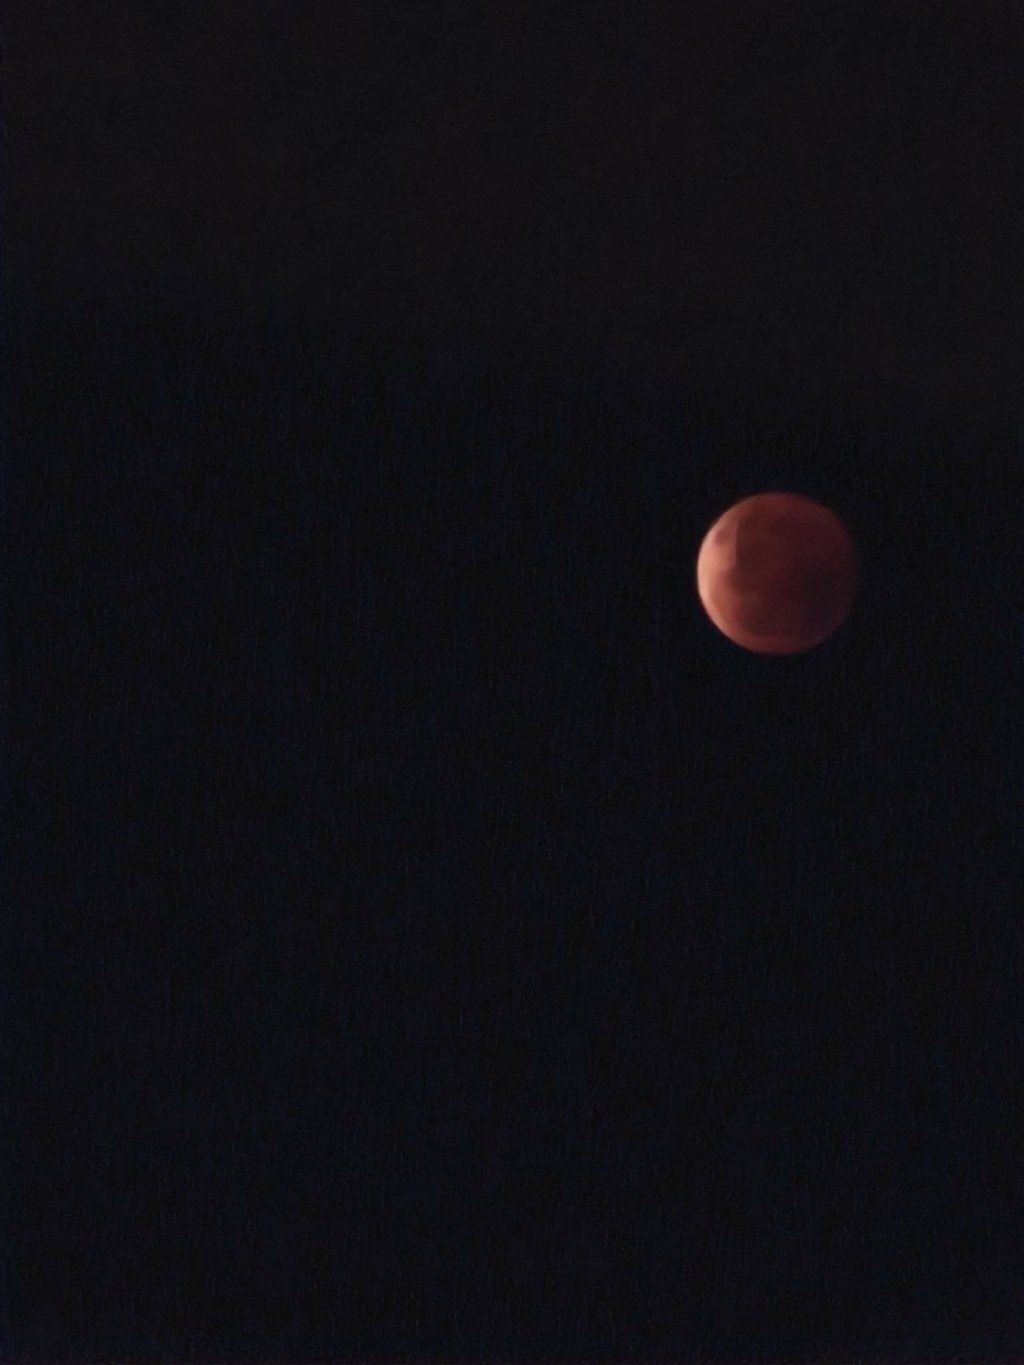 Lunar Eclipse  Blood_11